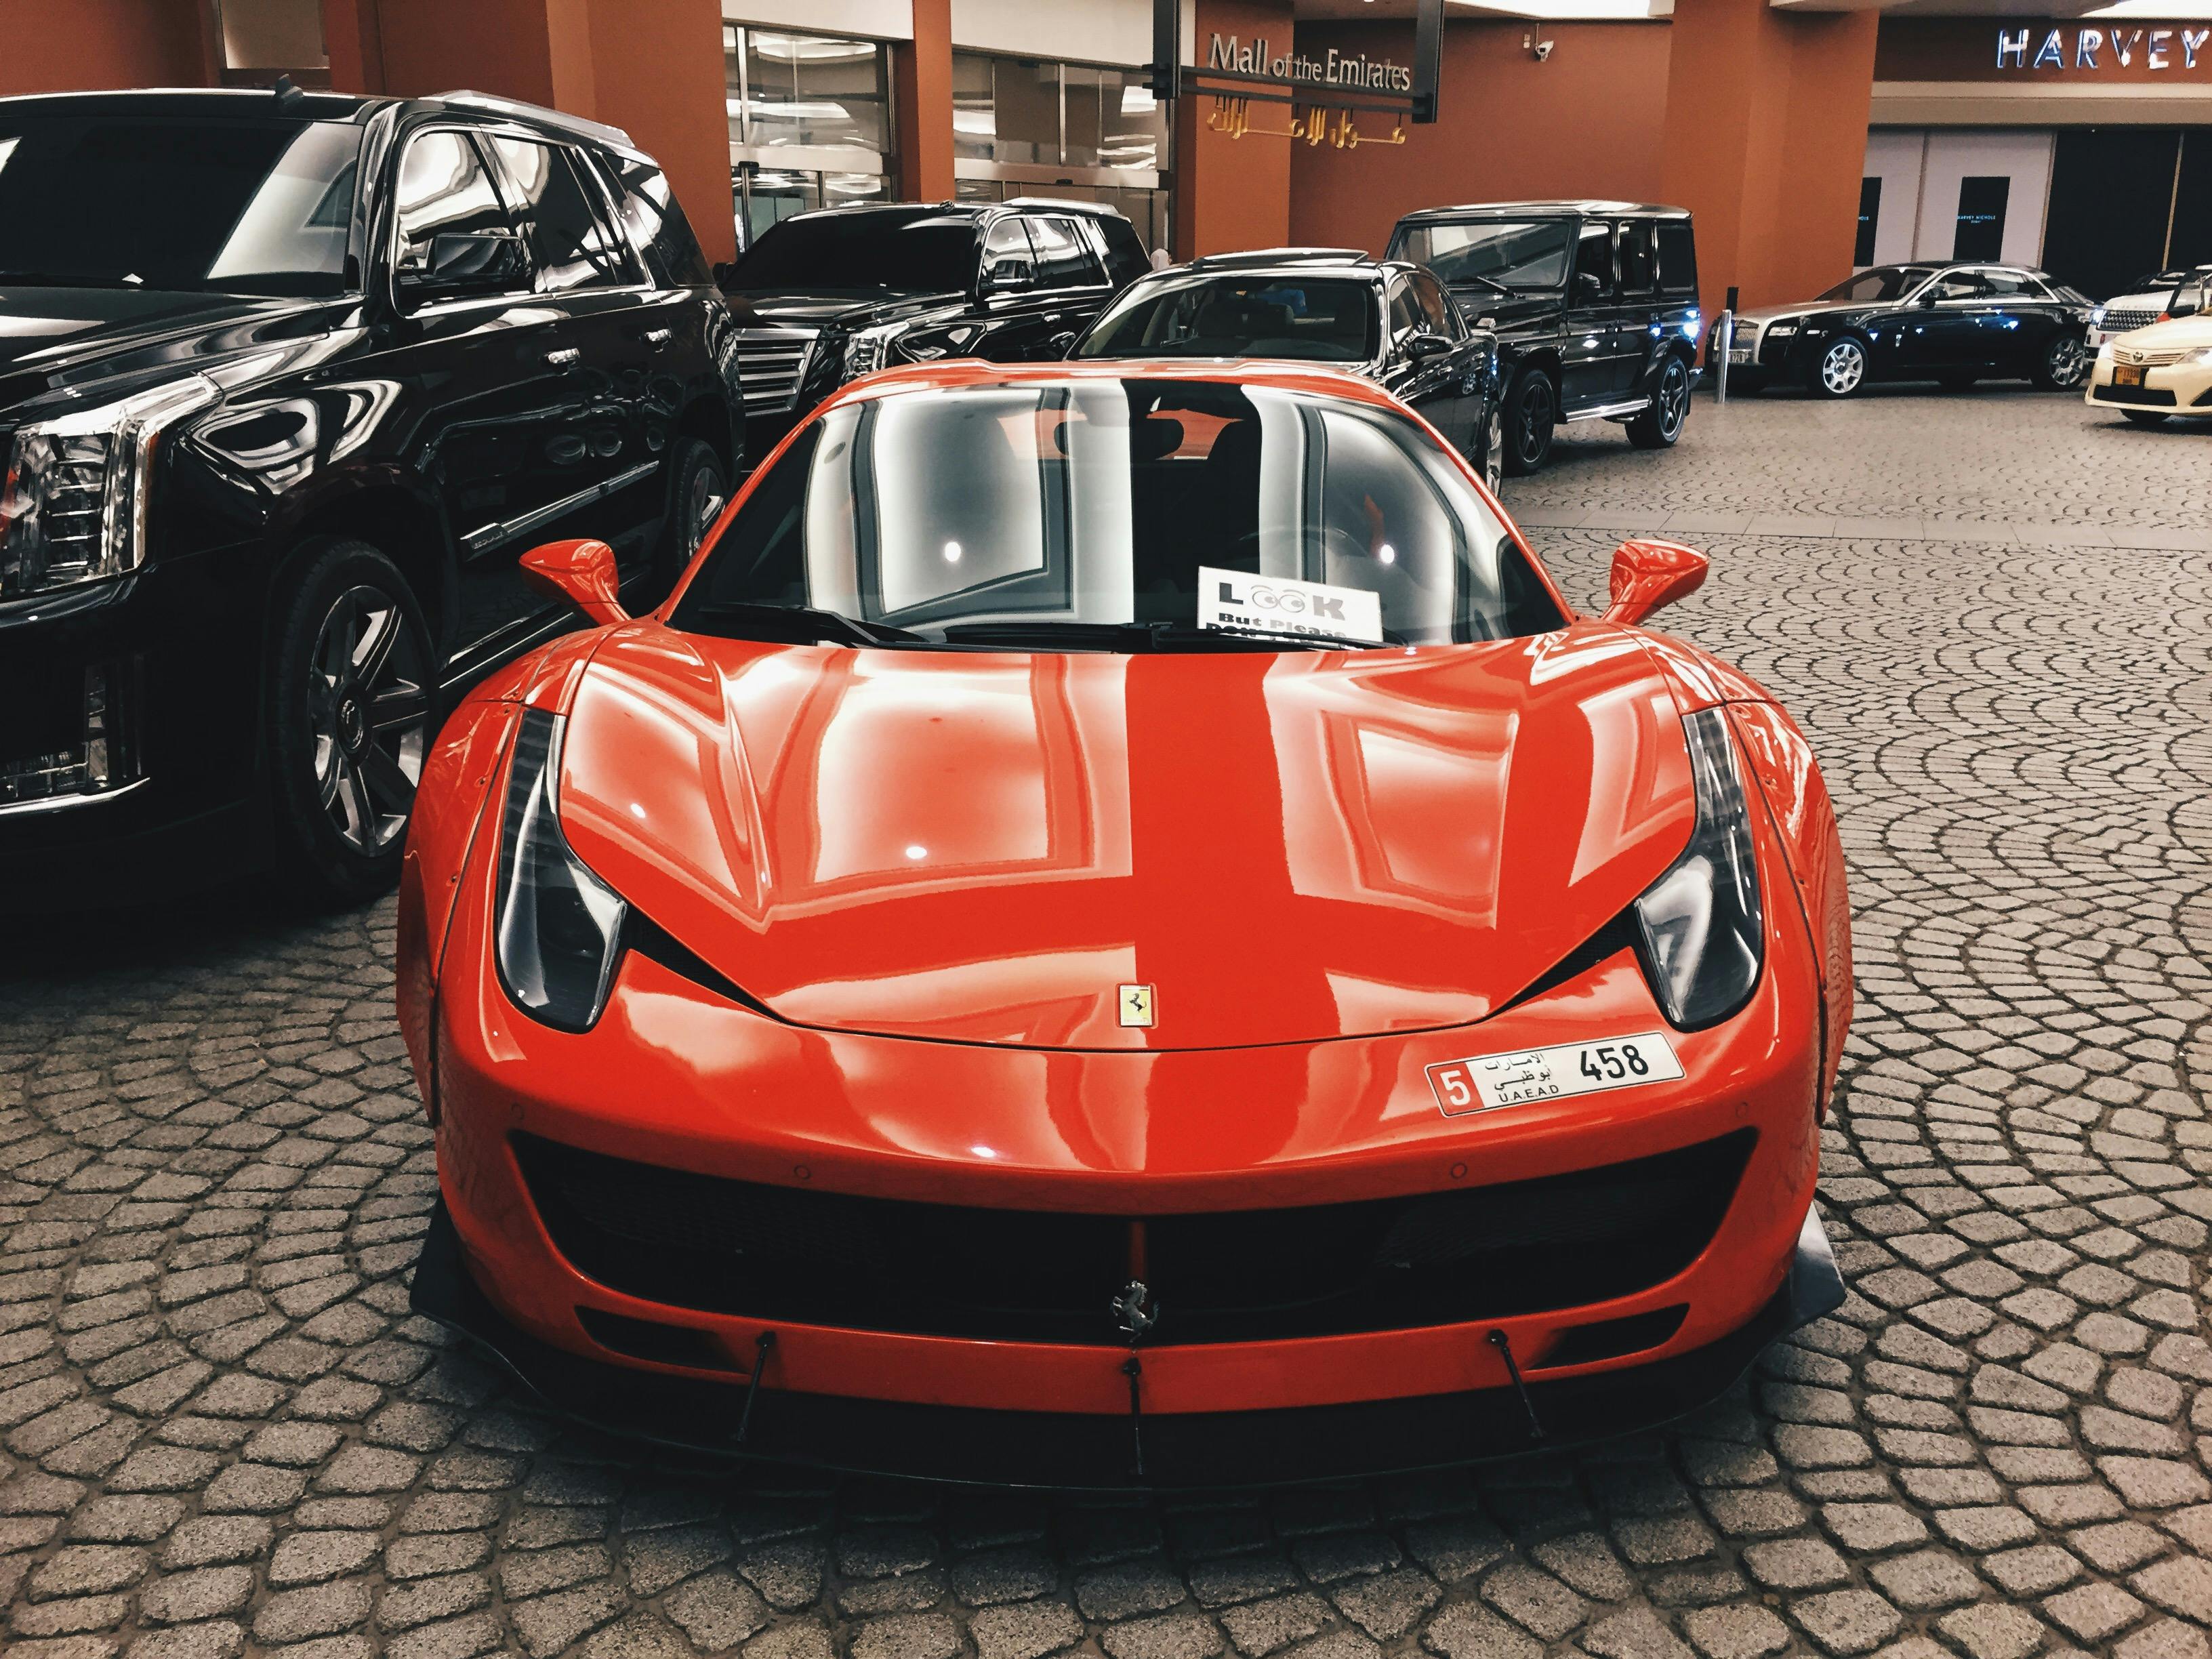 Nếu bạn yêu thích tốc độ và cảm giác mạnh, thì hãy cùng đến với bộ sưu tập hình ảnh xe Ferrari. Sự kết hợp giữa thiết kế hoàn hảo và công nghệ hiện đại đem đến cho Ferrari một vị thế đặc biệt trong ngành công nghiệp xe hơi. Hãy cùng chiêm ngưỡng và đắm mình trong thế giới của các dòng xe Ferrari nhé!